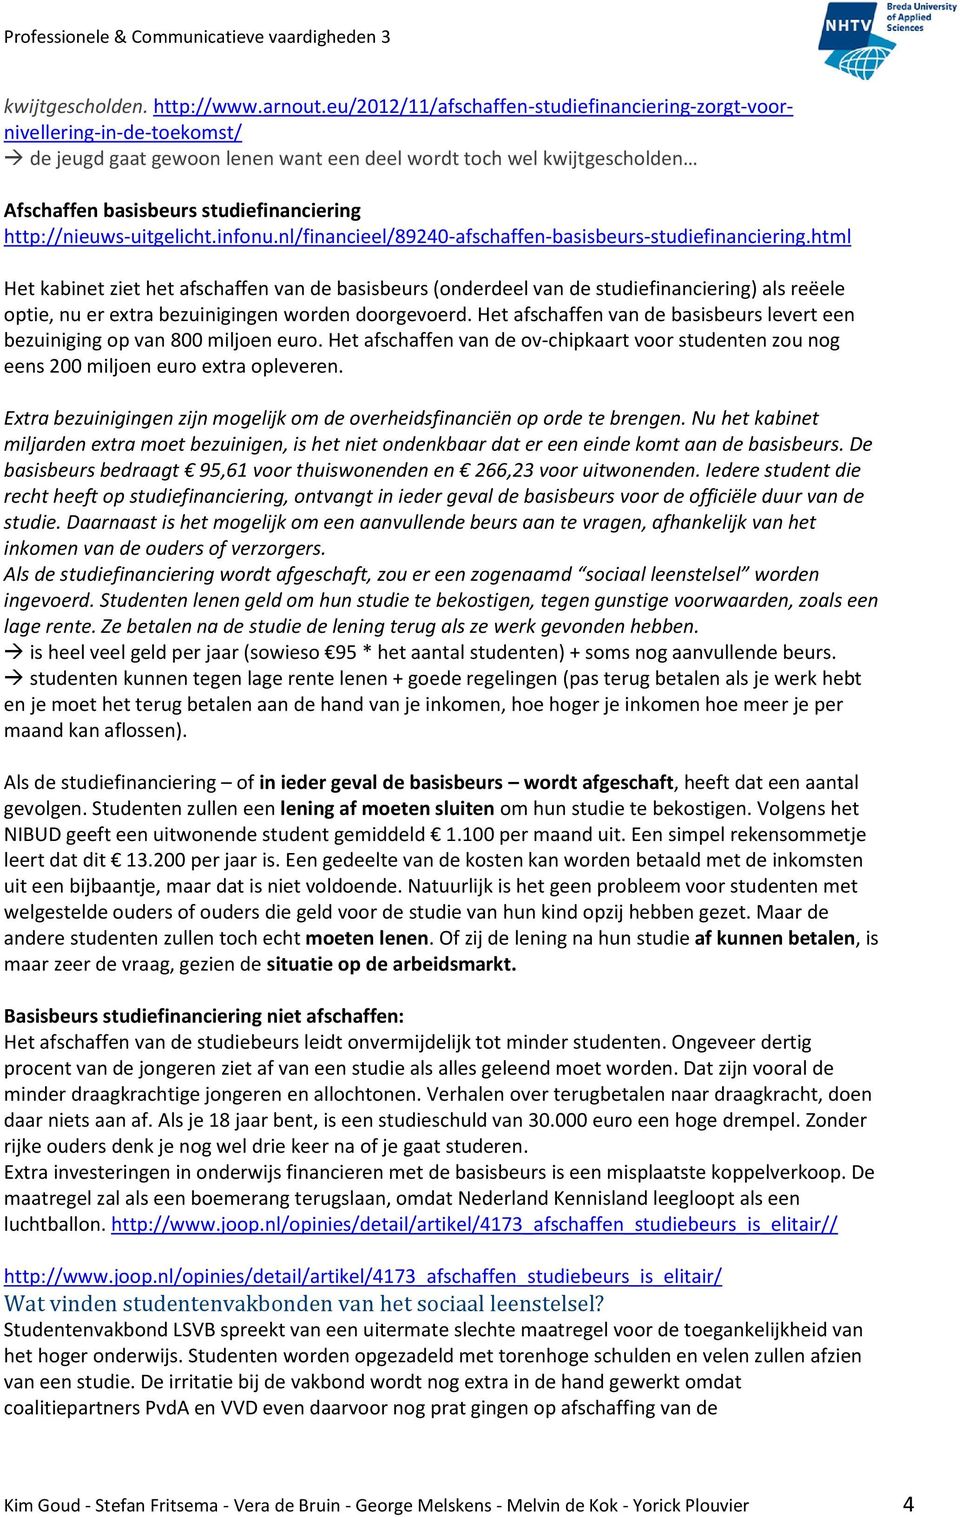 http://nieuws-uitgelicht.infonu.nl/financieel/89240-afschaffen-basisbeurs-studiefinanciering.